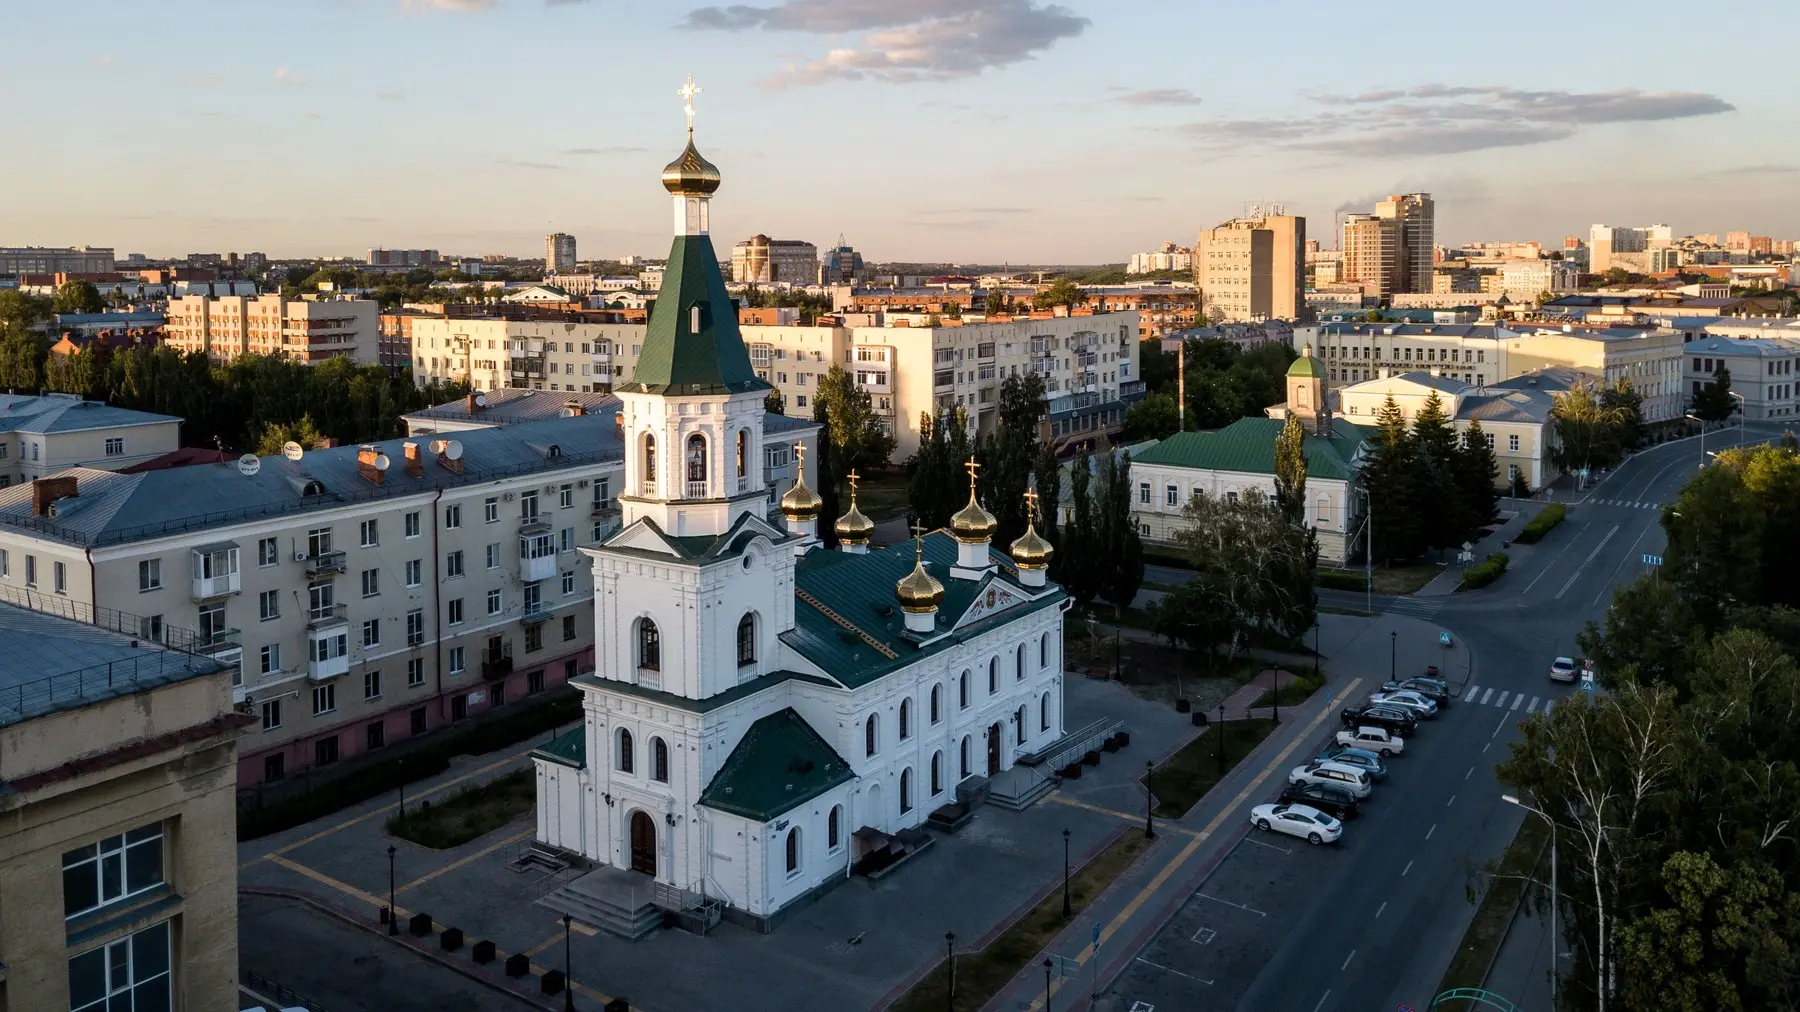 ruski grad omsk, 2017 - profimedia-66367a49af315.webp